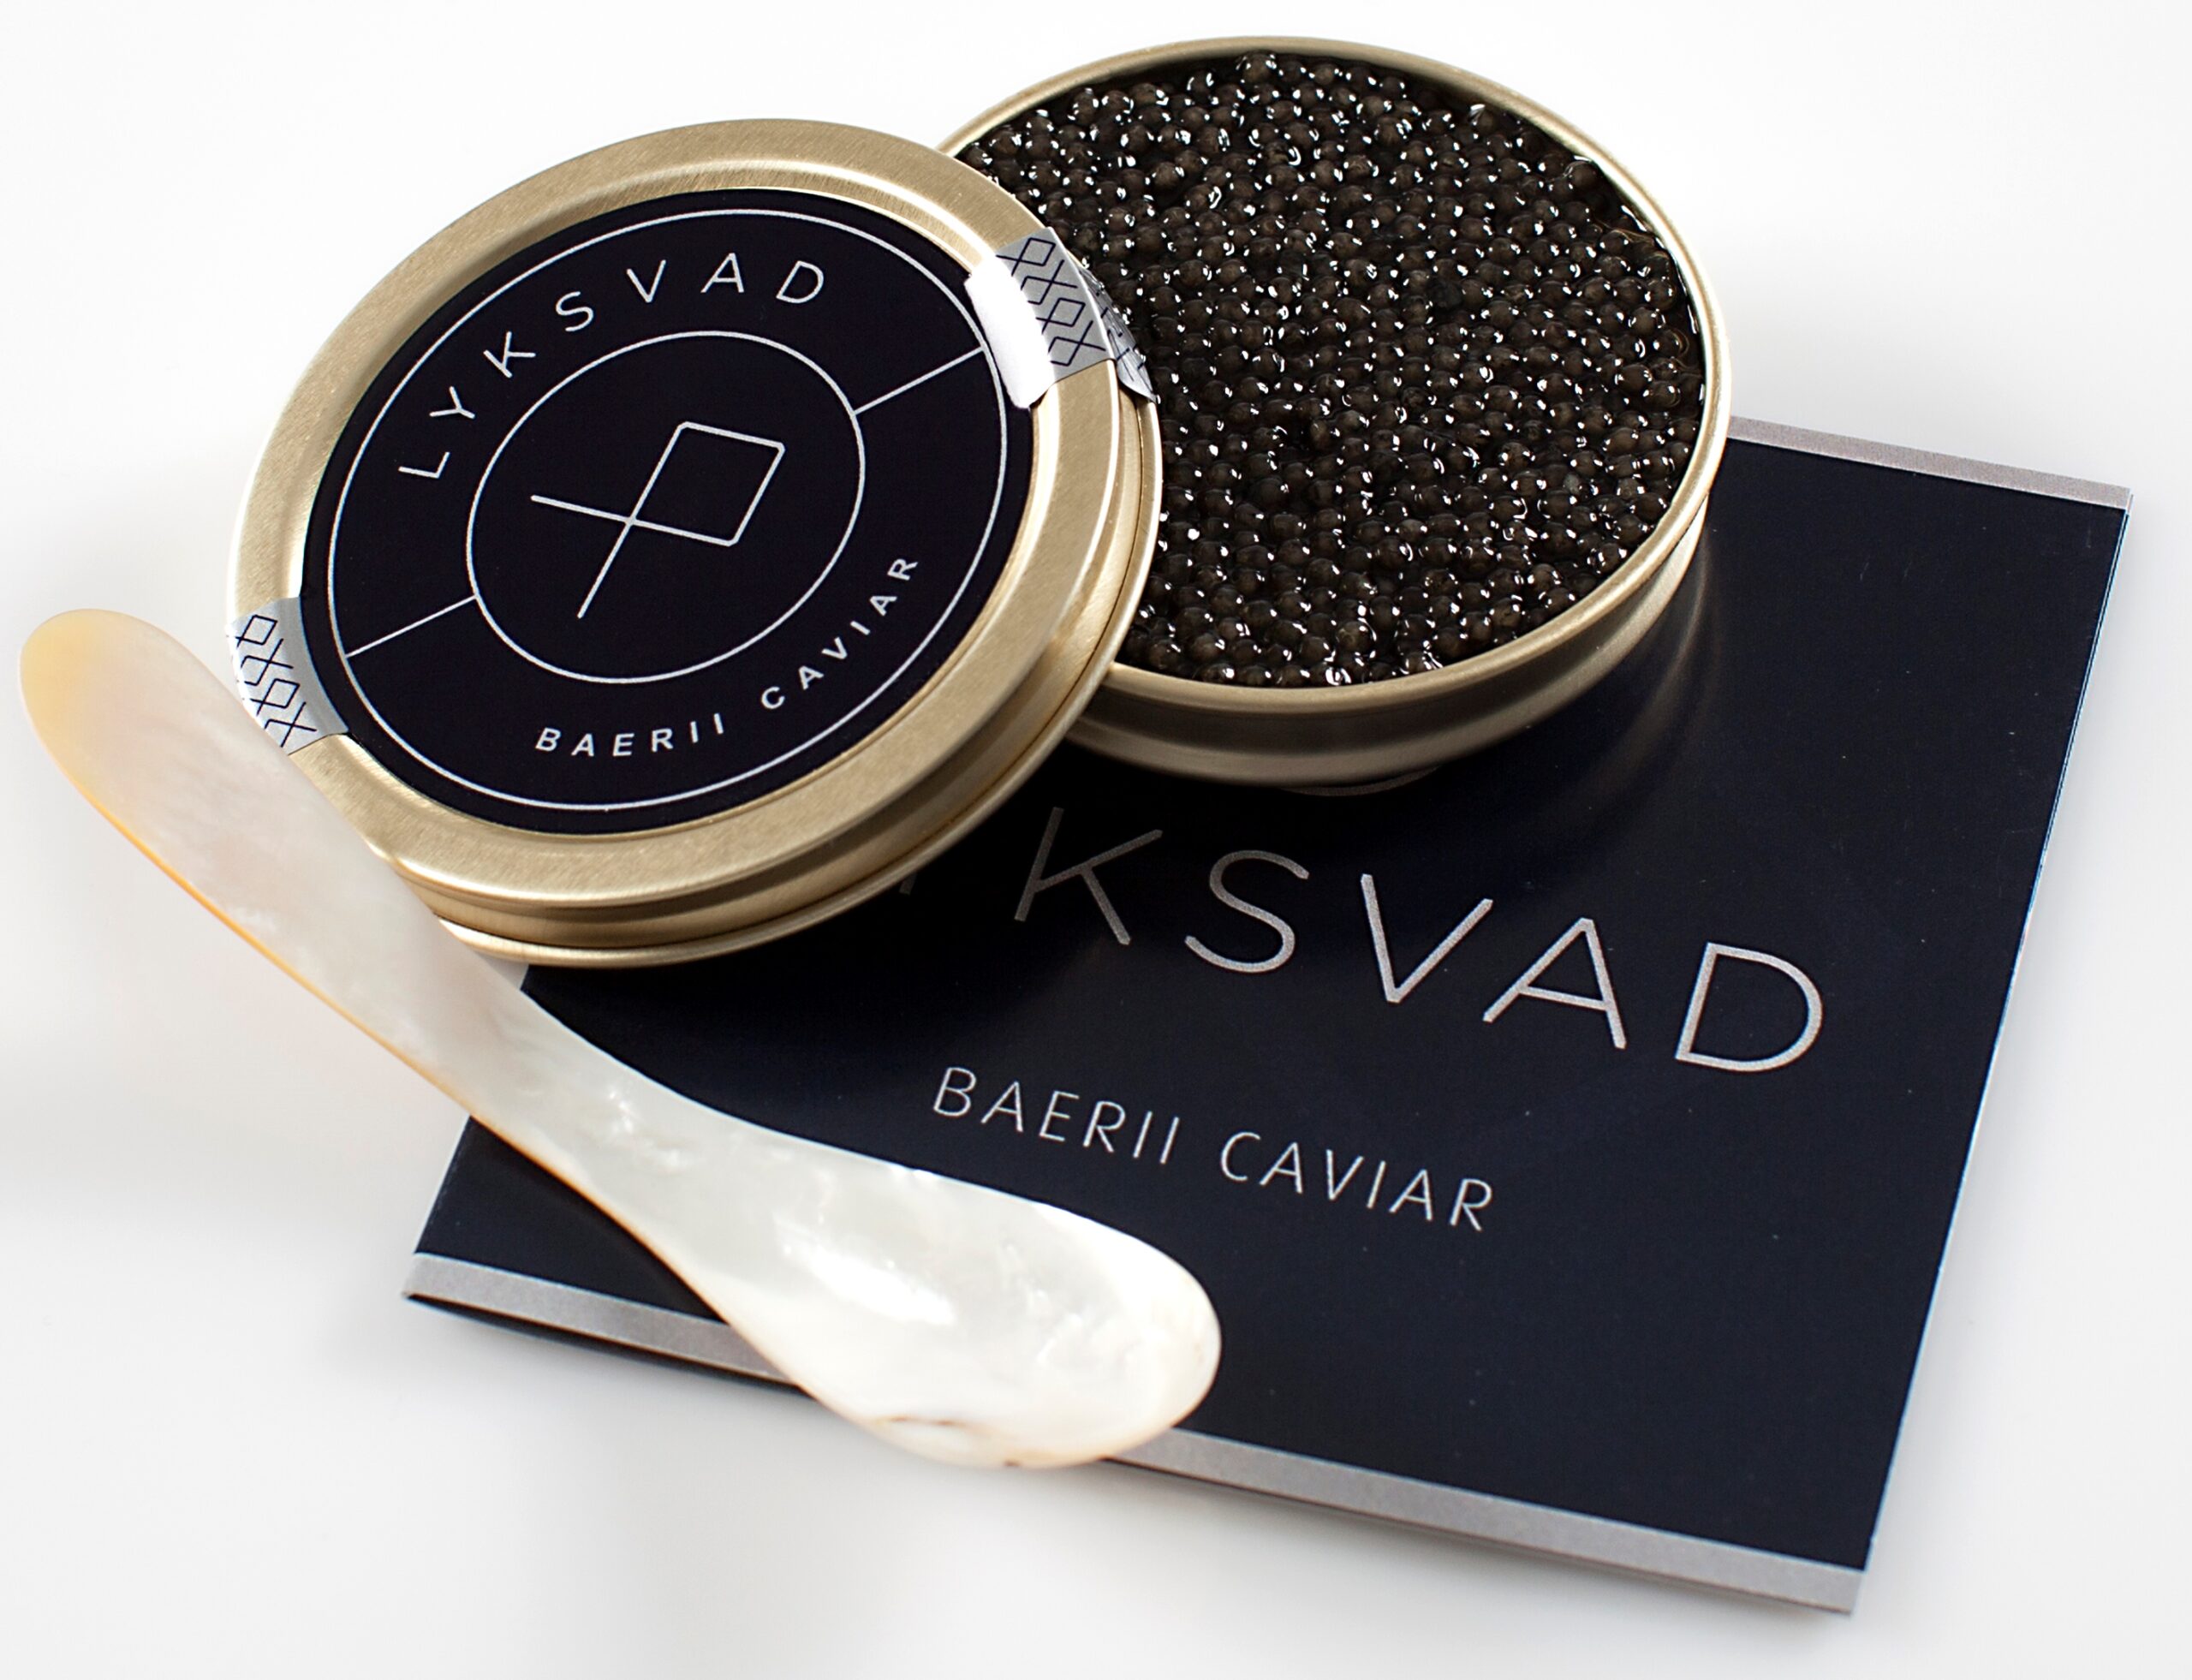 Baerii caviar fra Lyksvad åben dåse med perlemors ske